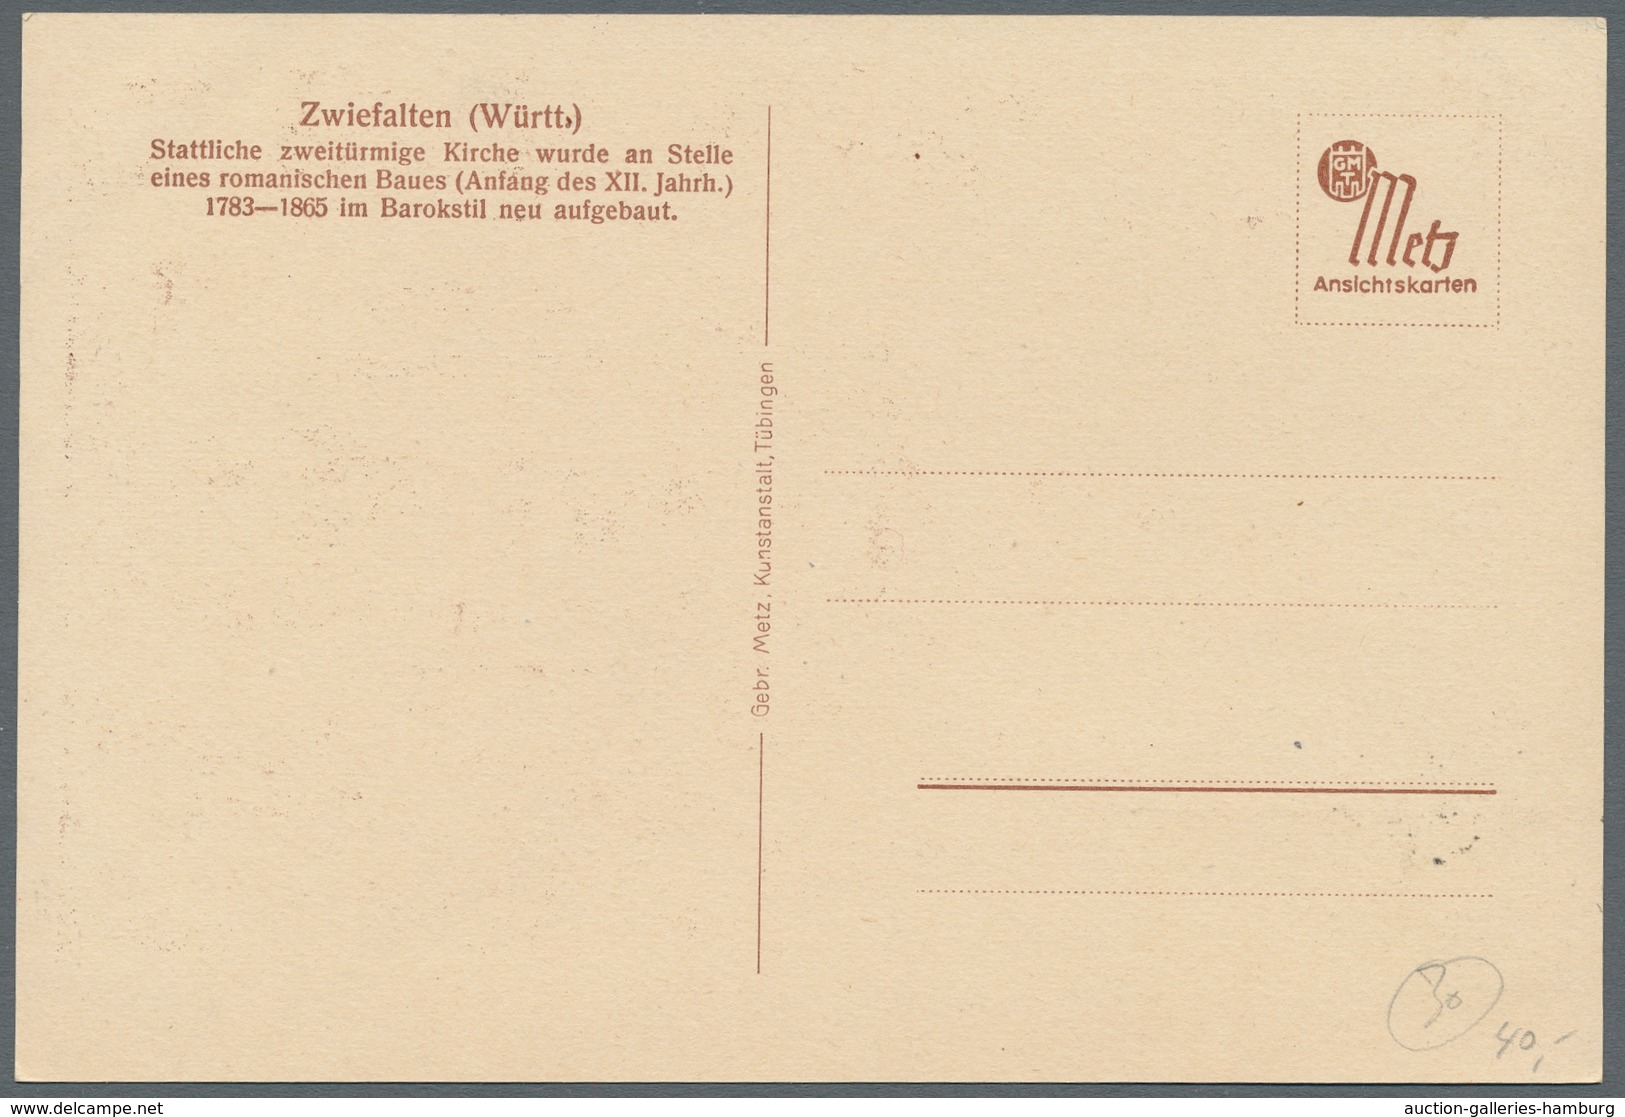 Französische Zone - Württemberg: 1947-48, acht meist verschiedene Maximumkarten der 1. bis 3.Dauerse